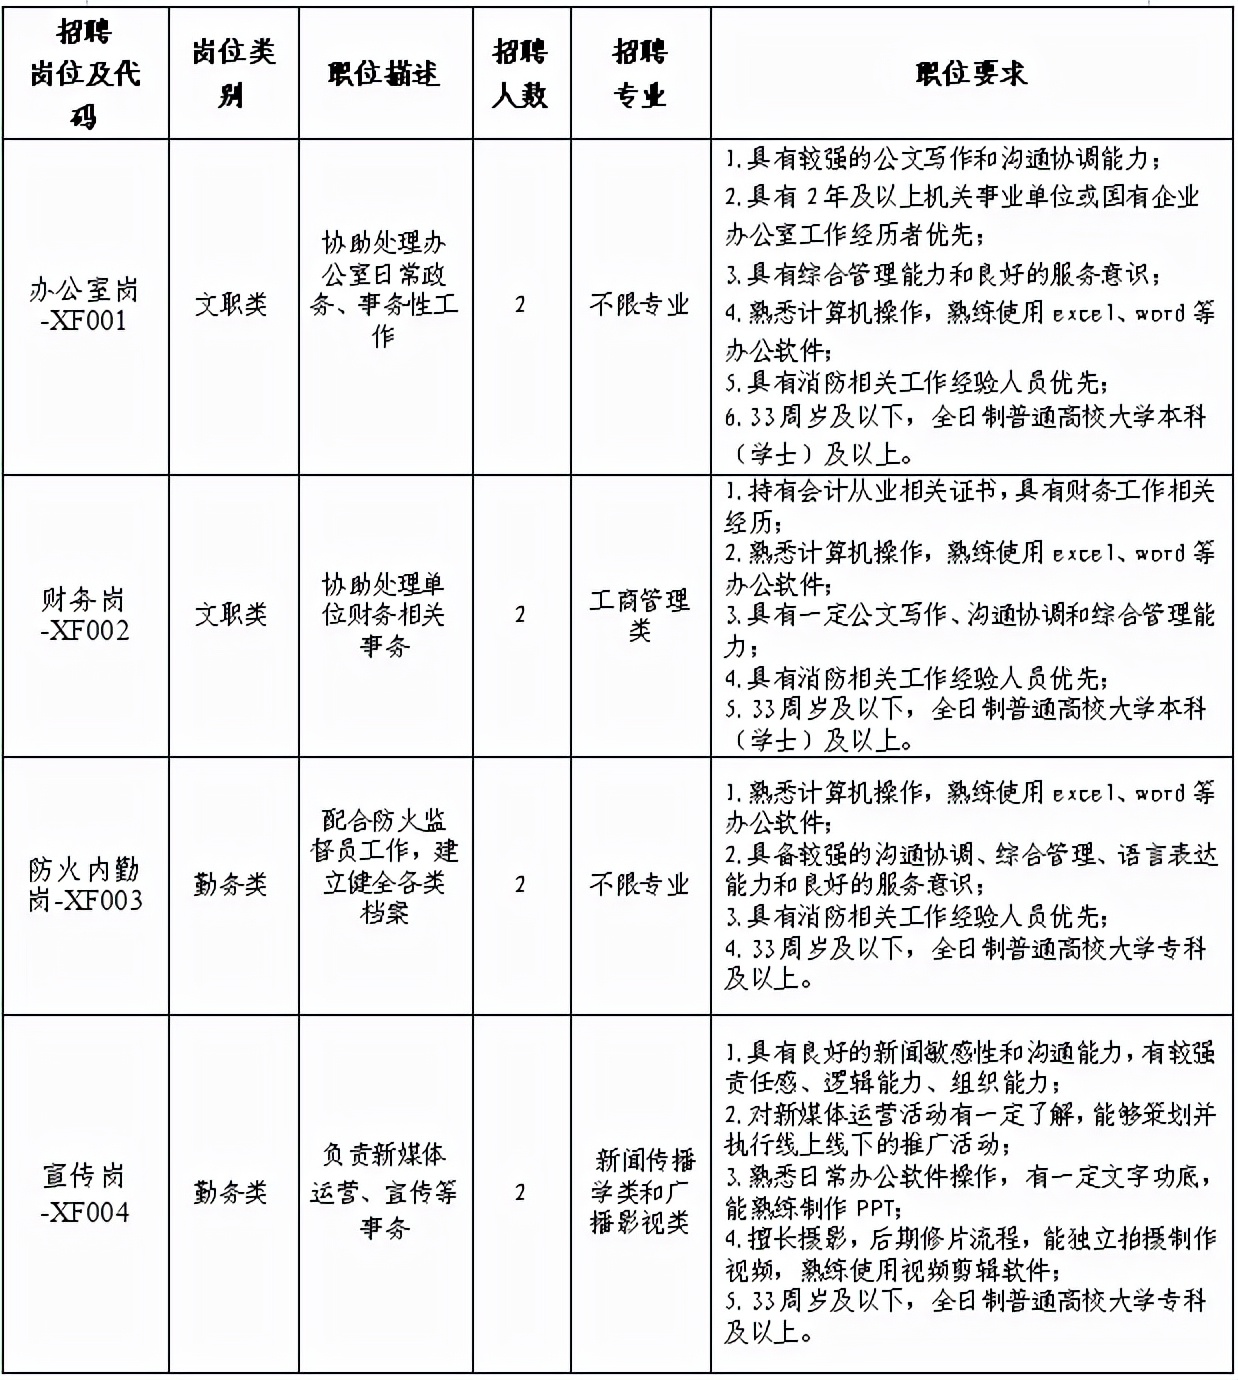 昆明工业园区招聘信息(300余个就业岗位)-郑州富士康